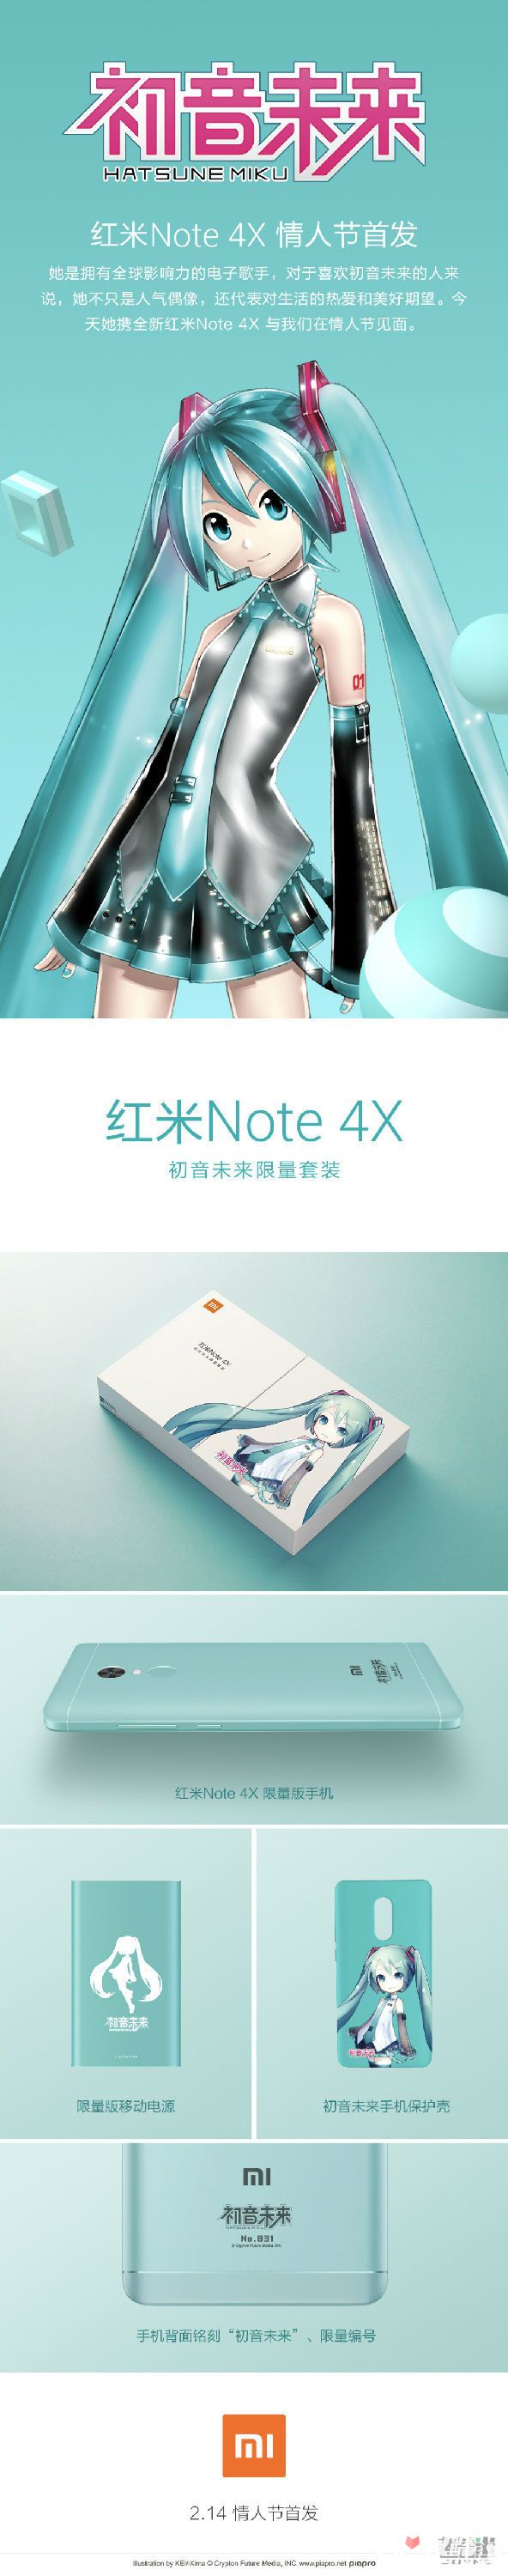 初音未来代言红米Note4X 骄傲的国产居然会和日本沾边？2